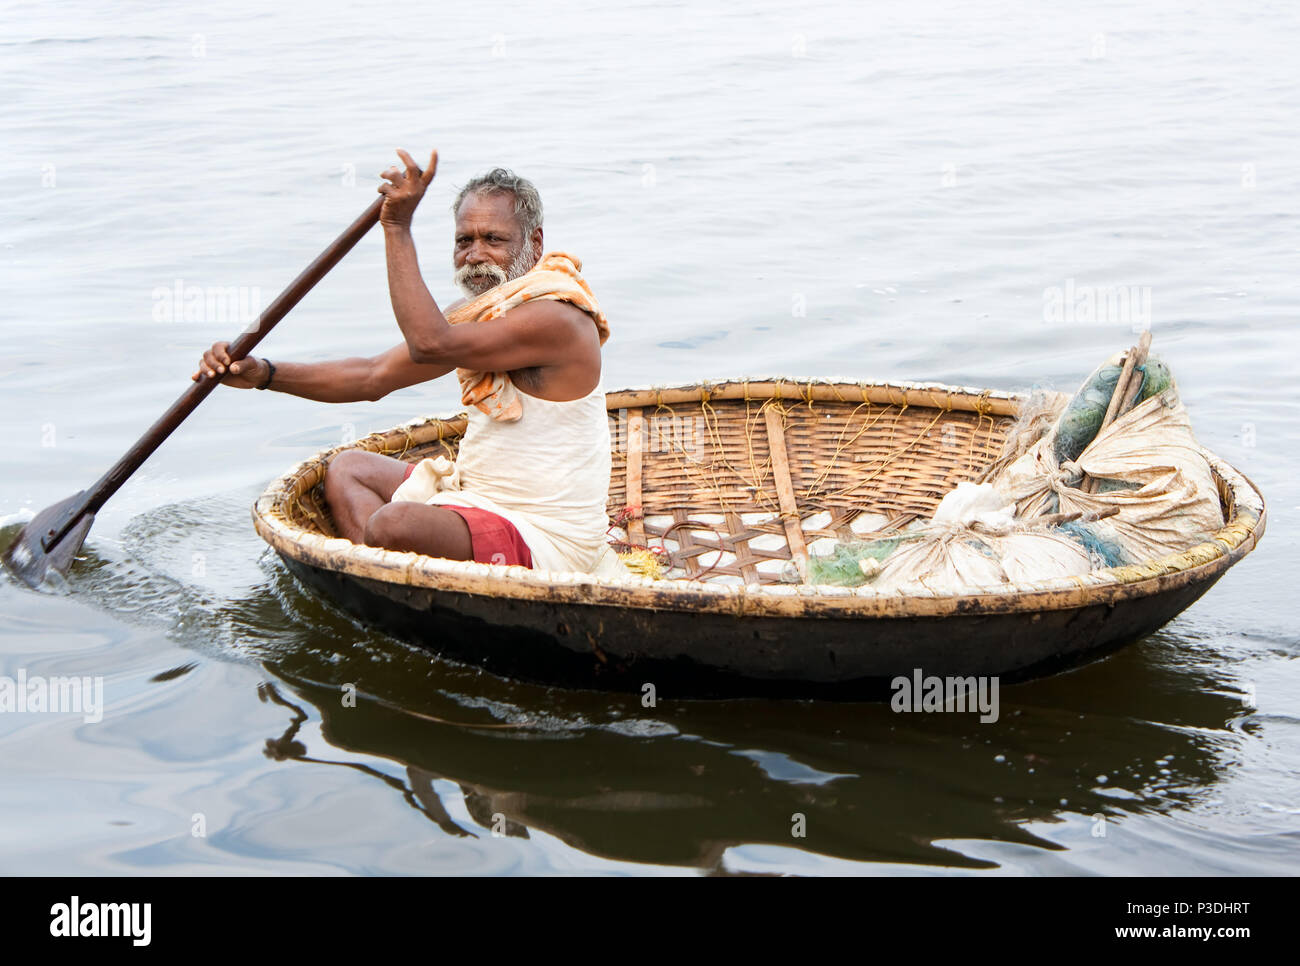 KERALA, INDE - Le 27 janvier : pêcheur dans le Kerala utilisé Tradiitional indian petit bateau de roseaux et de bambous, le 27 janvier 2009. L'État du Kerala, en Inde. Banque D'Images